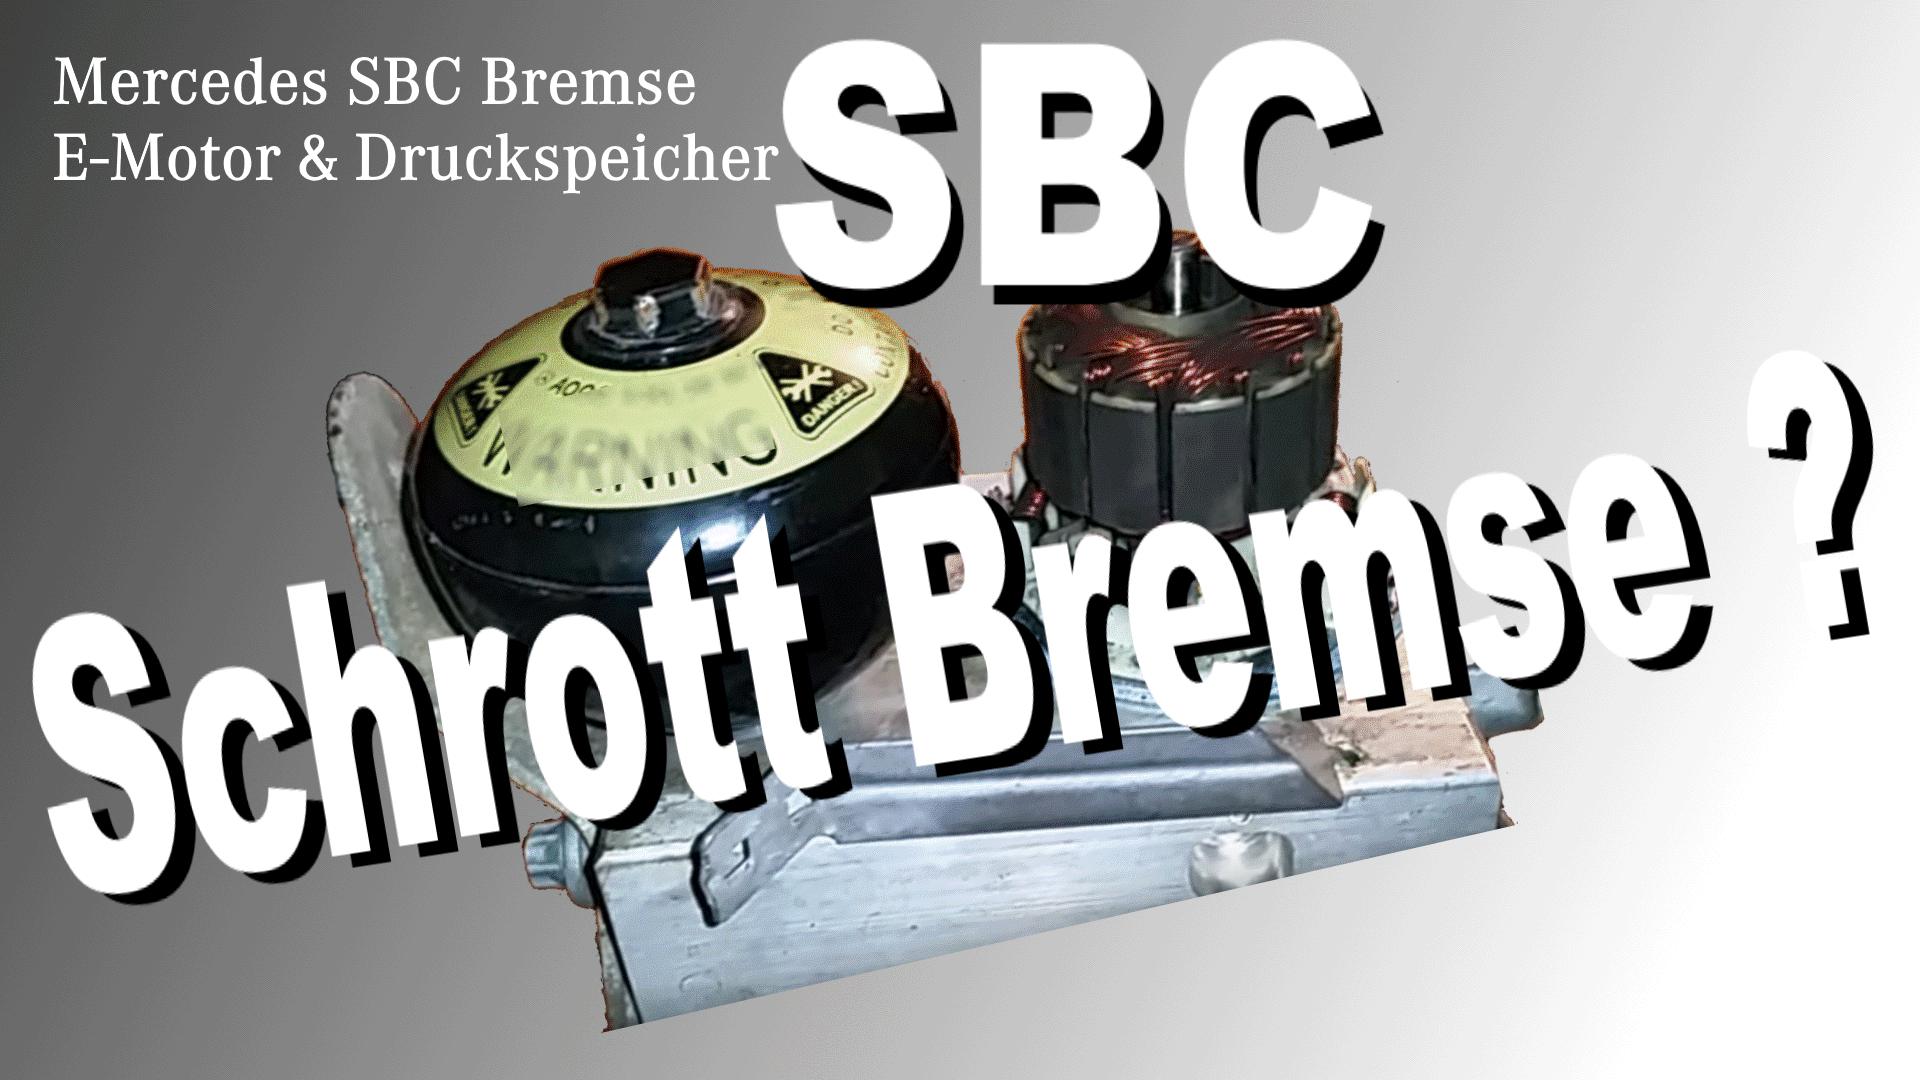 Die Mercedes SBC Bremse (Sensoric Brake Control) Probleme und Lösungen -  Der Mercedes Benz Youngtimer Blog